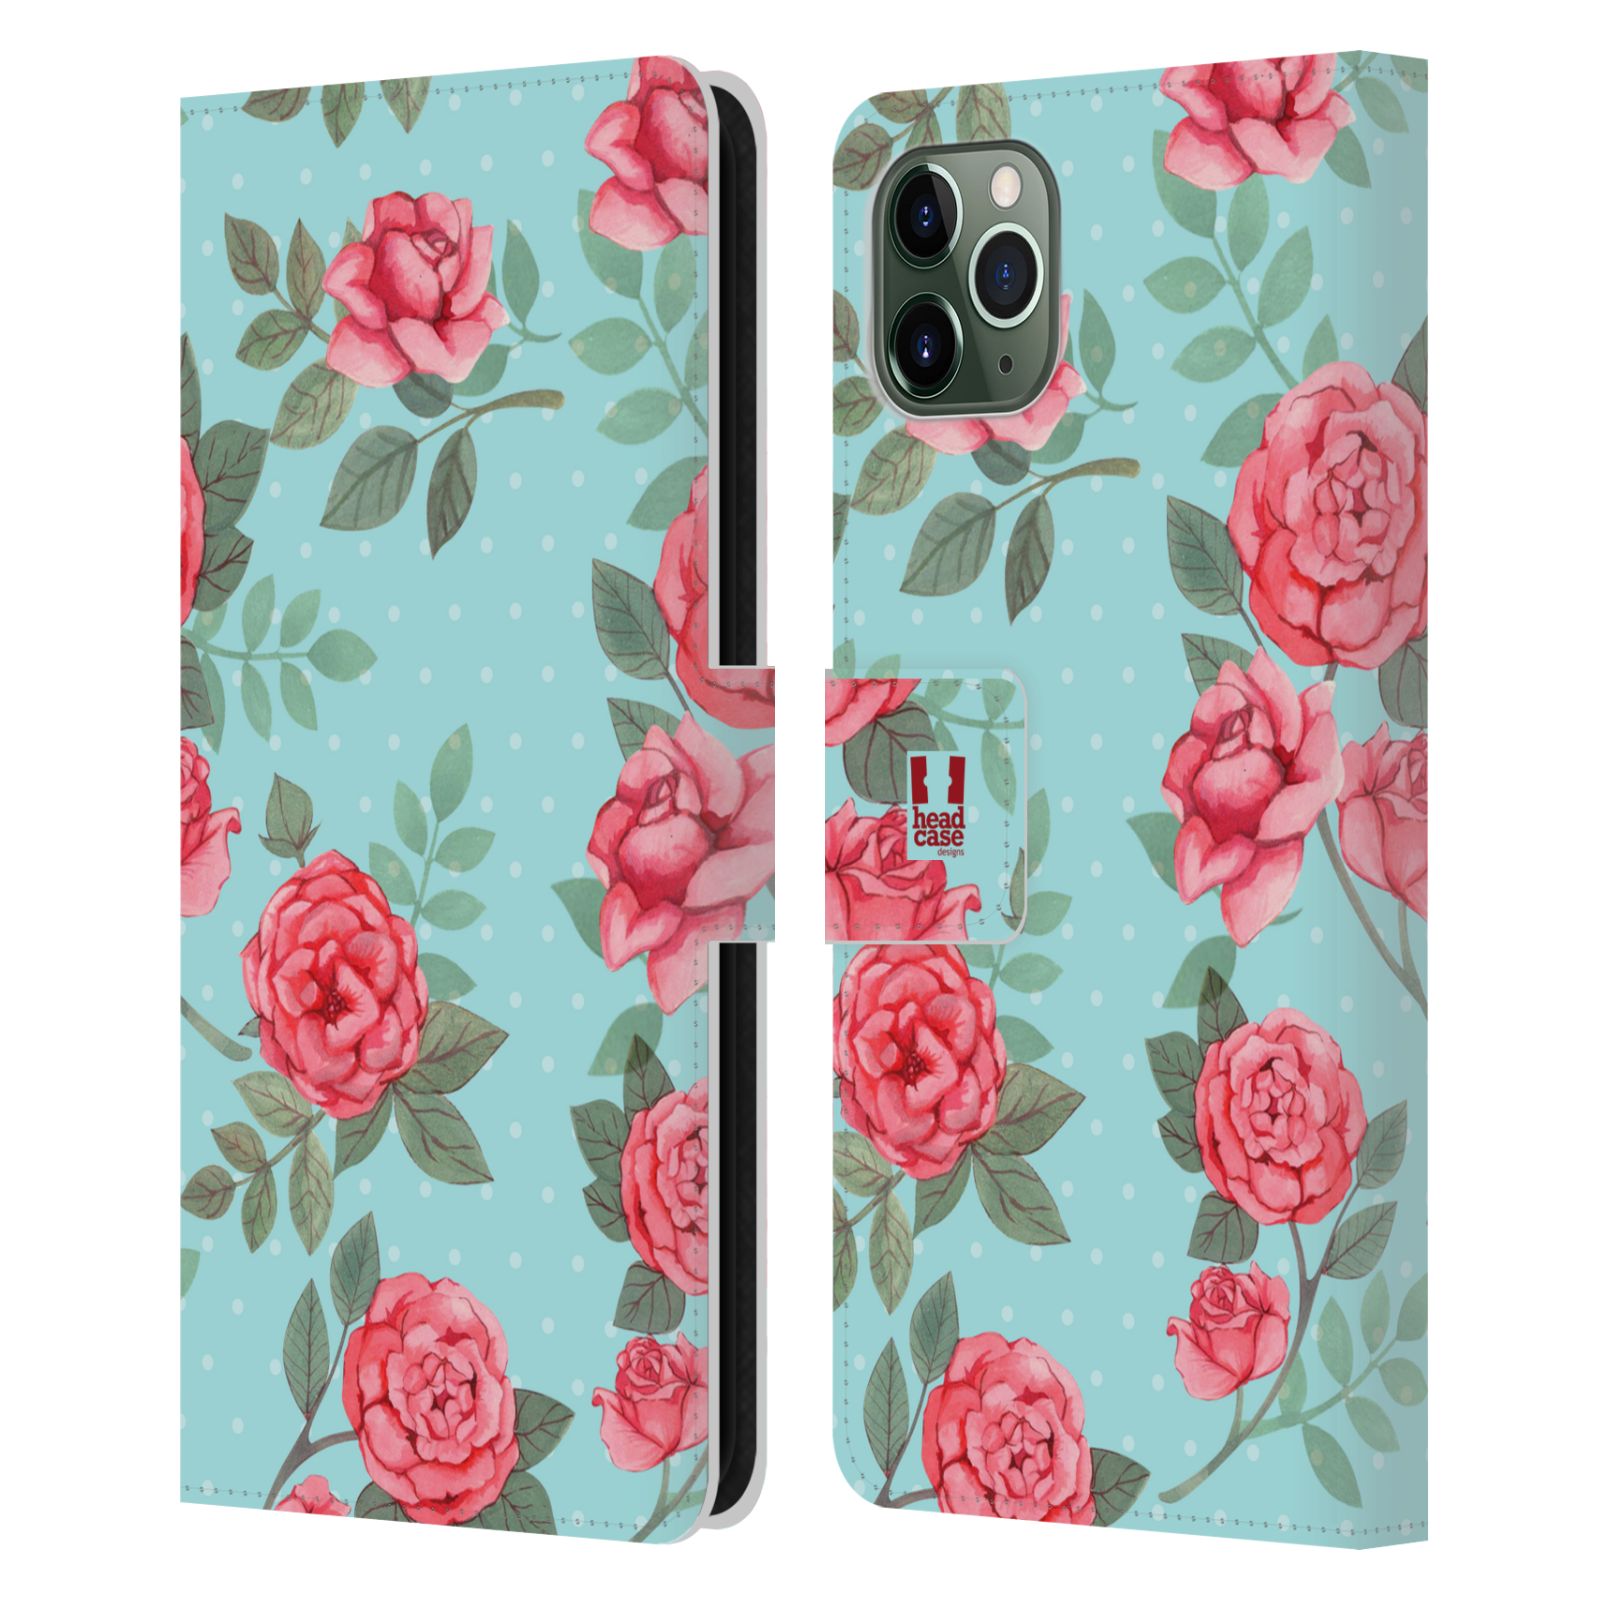 Pouzdro na mobil Apple Iphone 11 PRO MAX romantické květy velké růže modrá a růžová